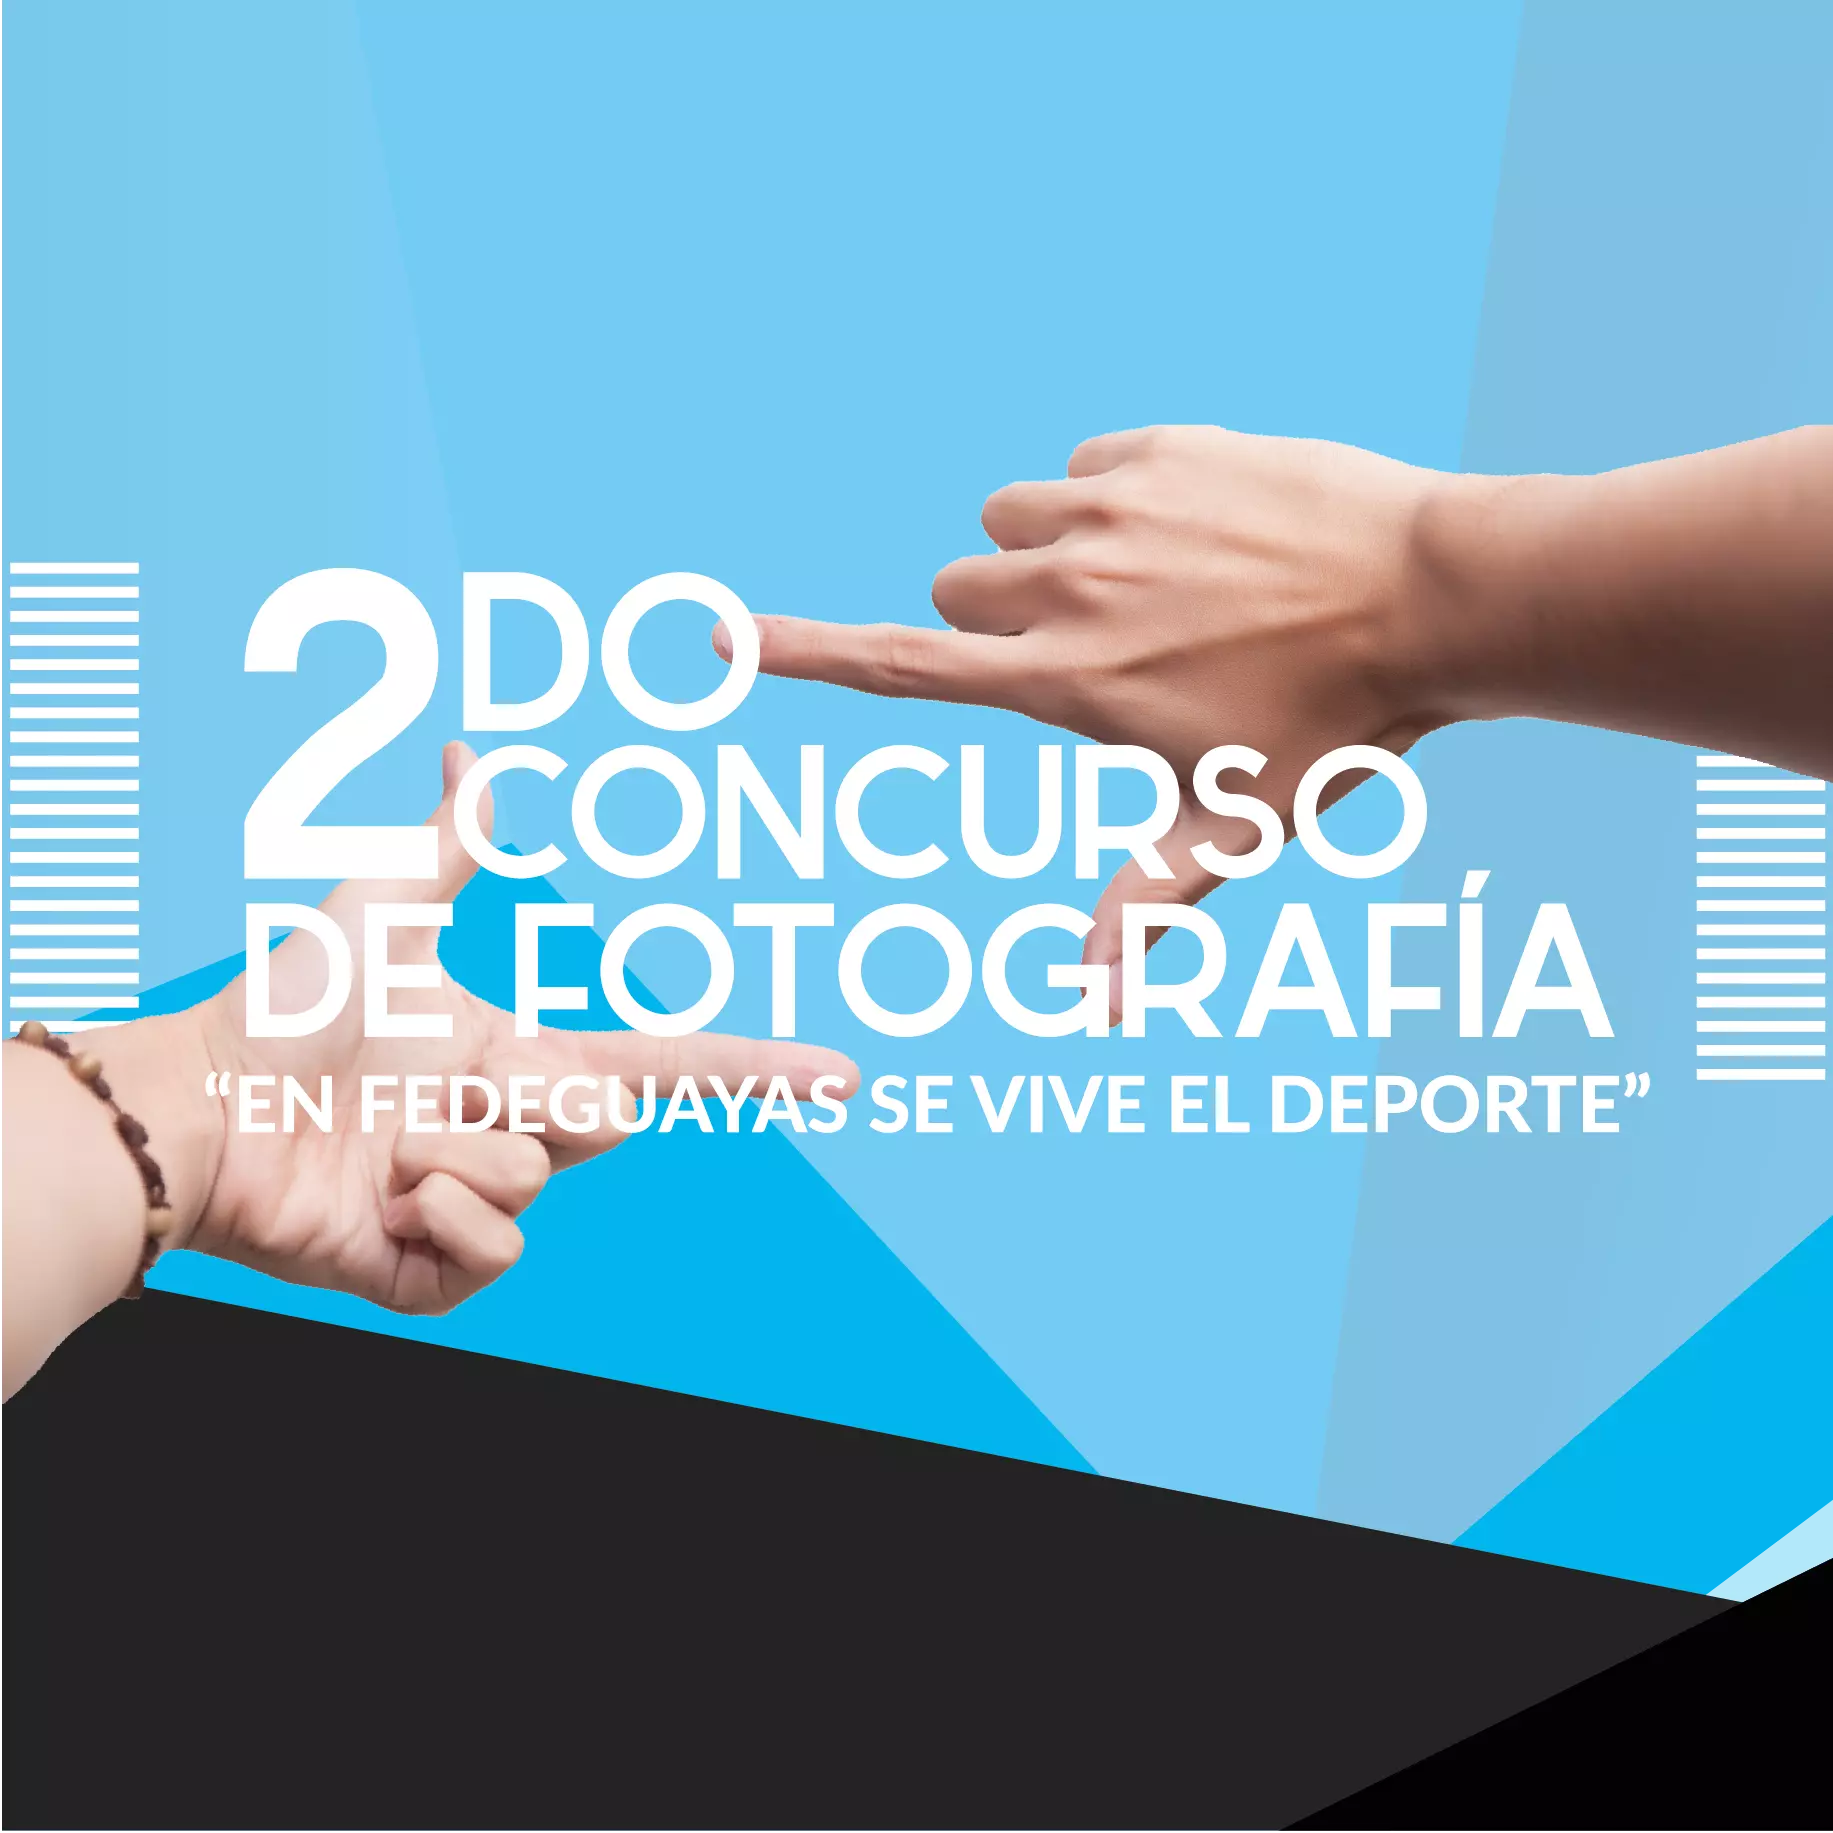 2015 Concurso Fotografía Fedeguayas